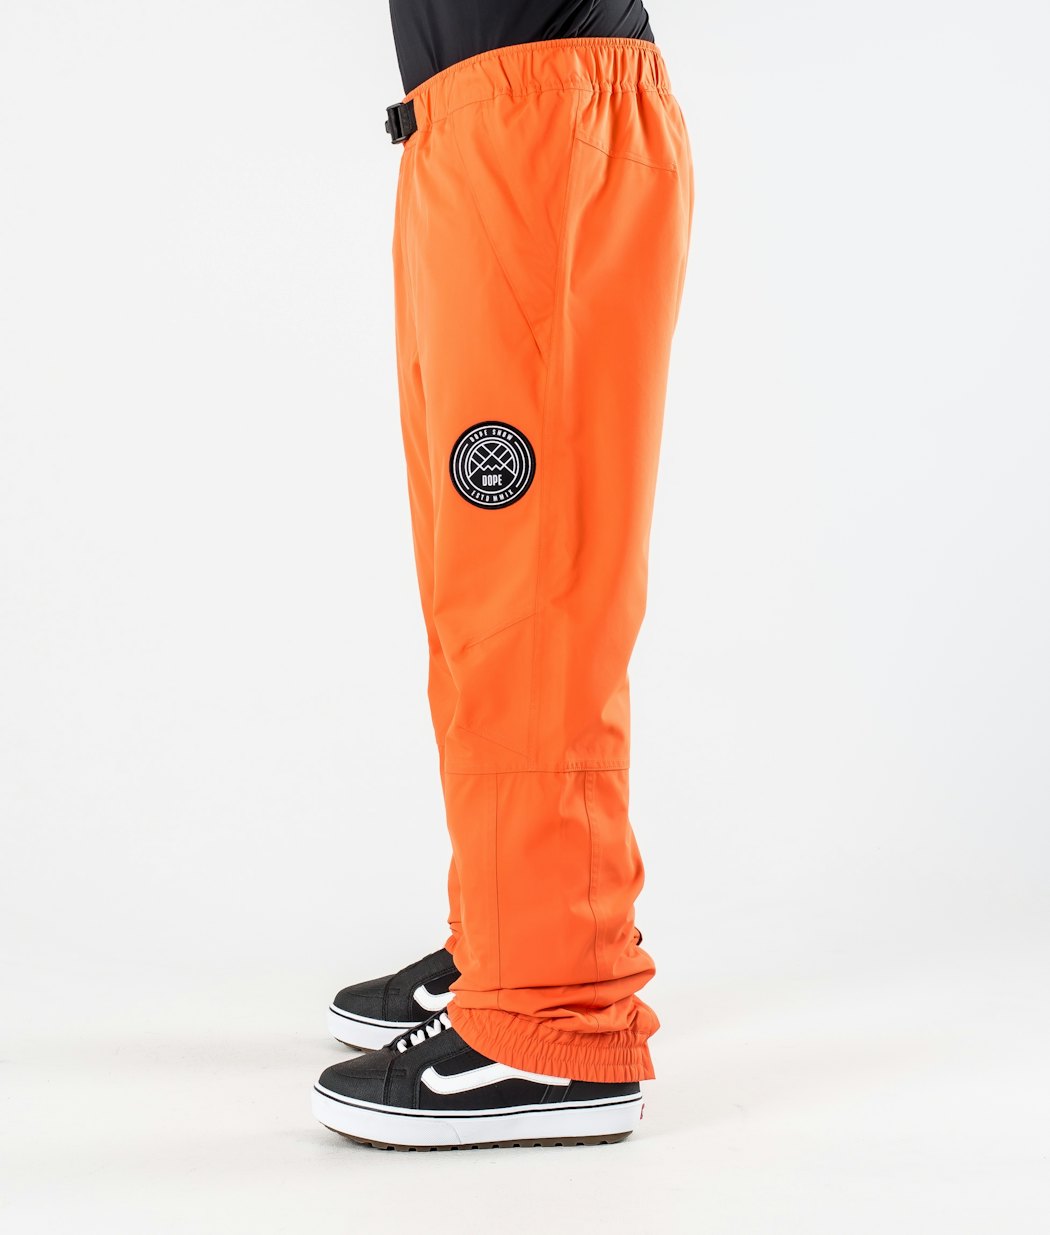 Blizzard 2020 Kalhoty na Snowboard Pánské Orange